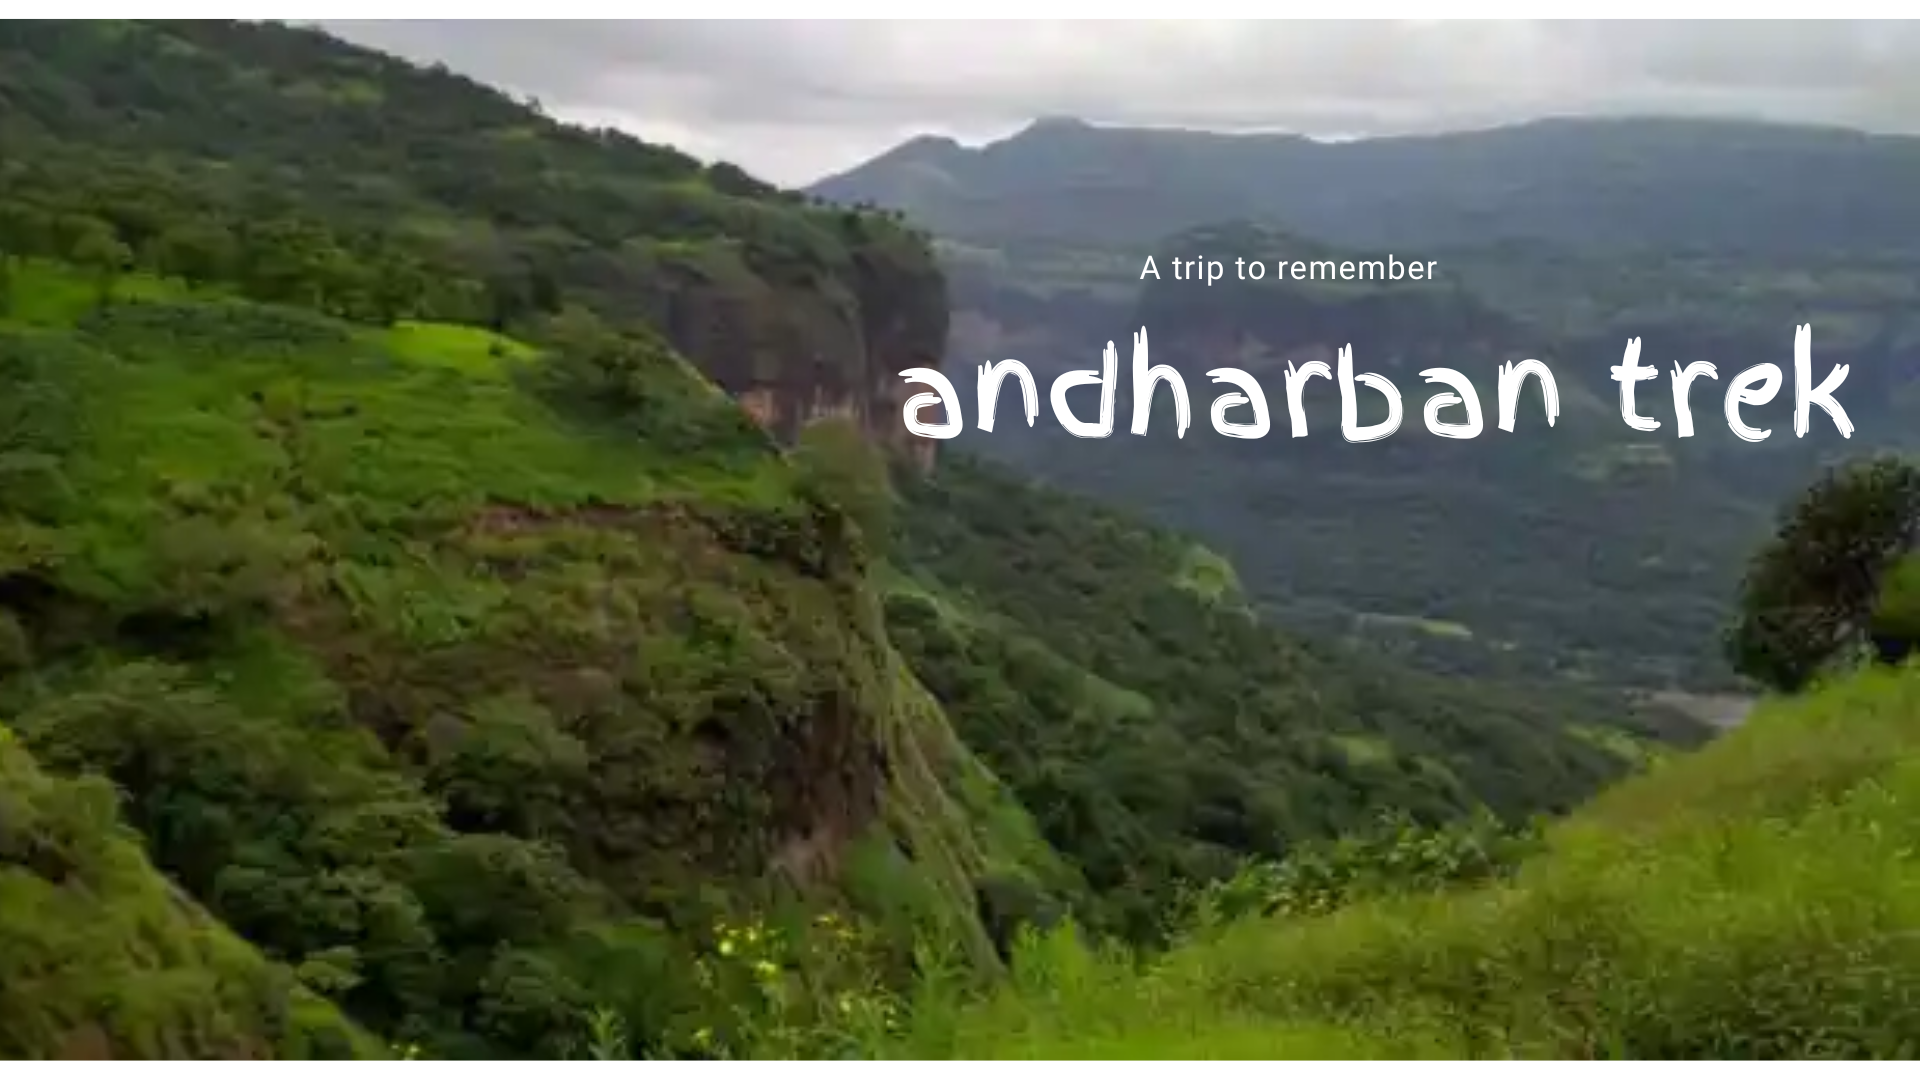 andharban trek quotes